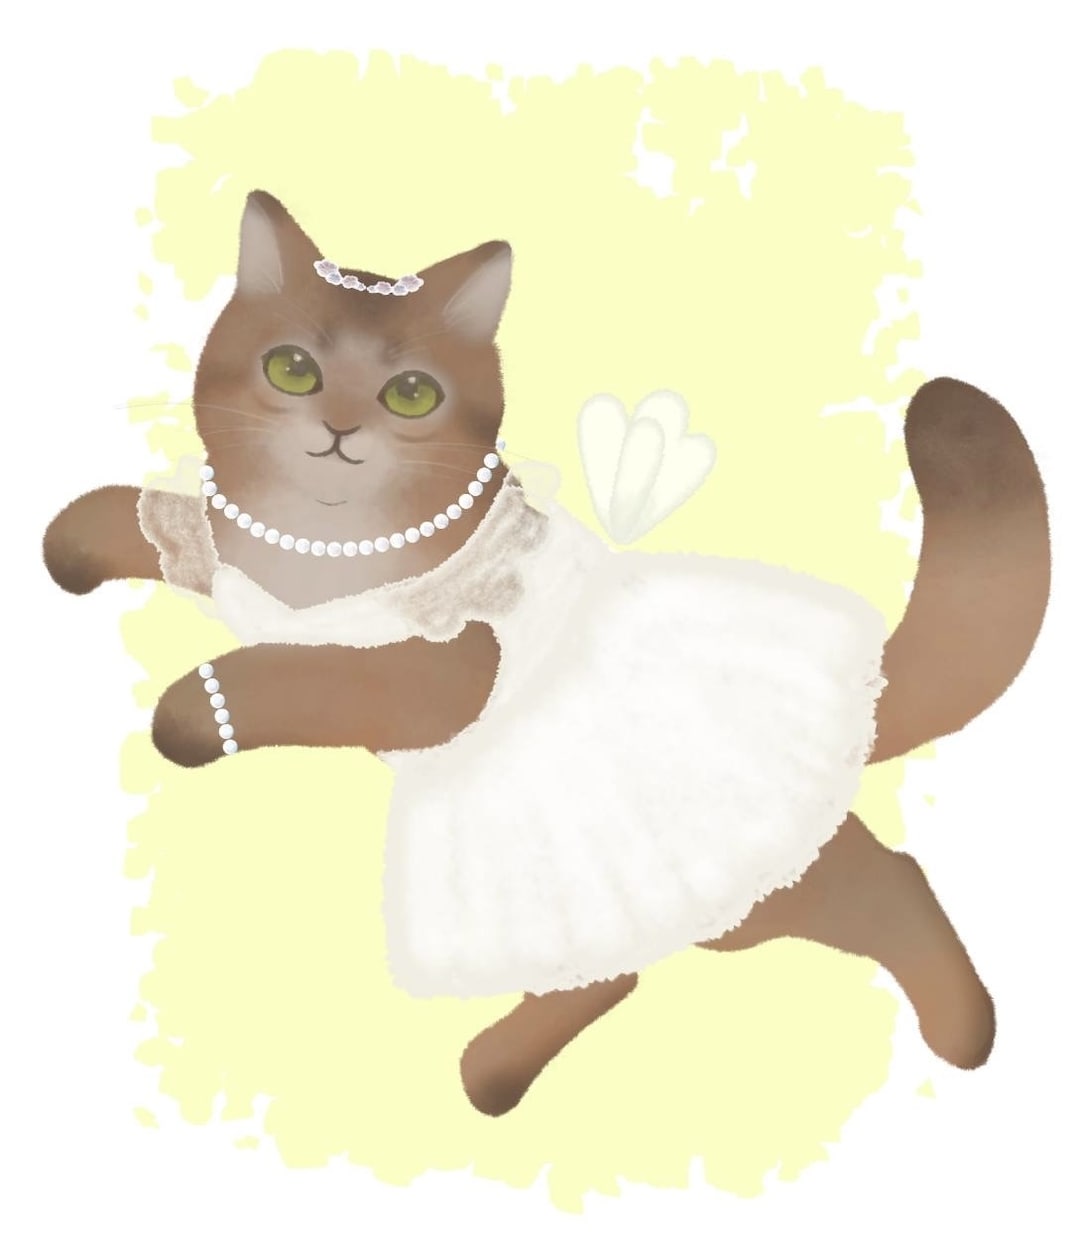 バレエねこのイラストをお描きします バレエの衣装を着た猫のイラストです イメージ1